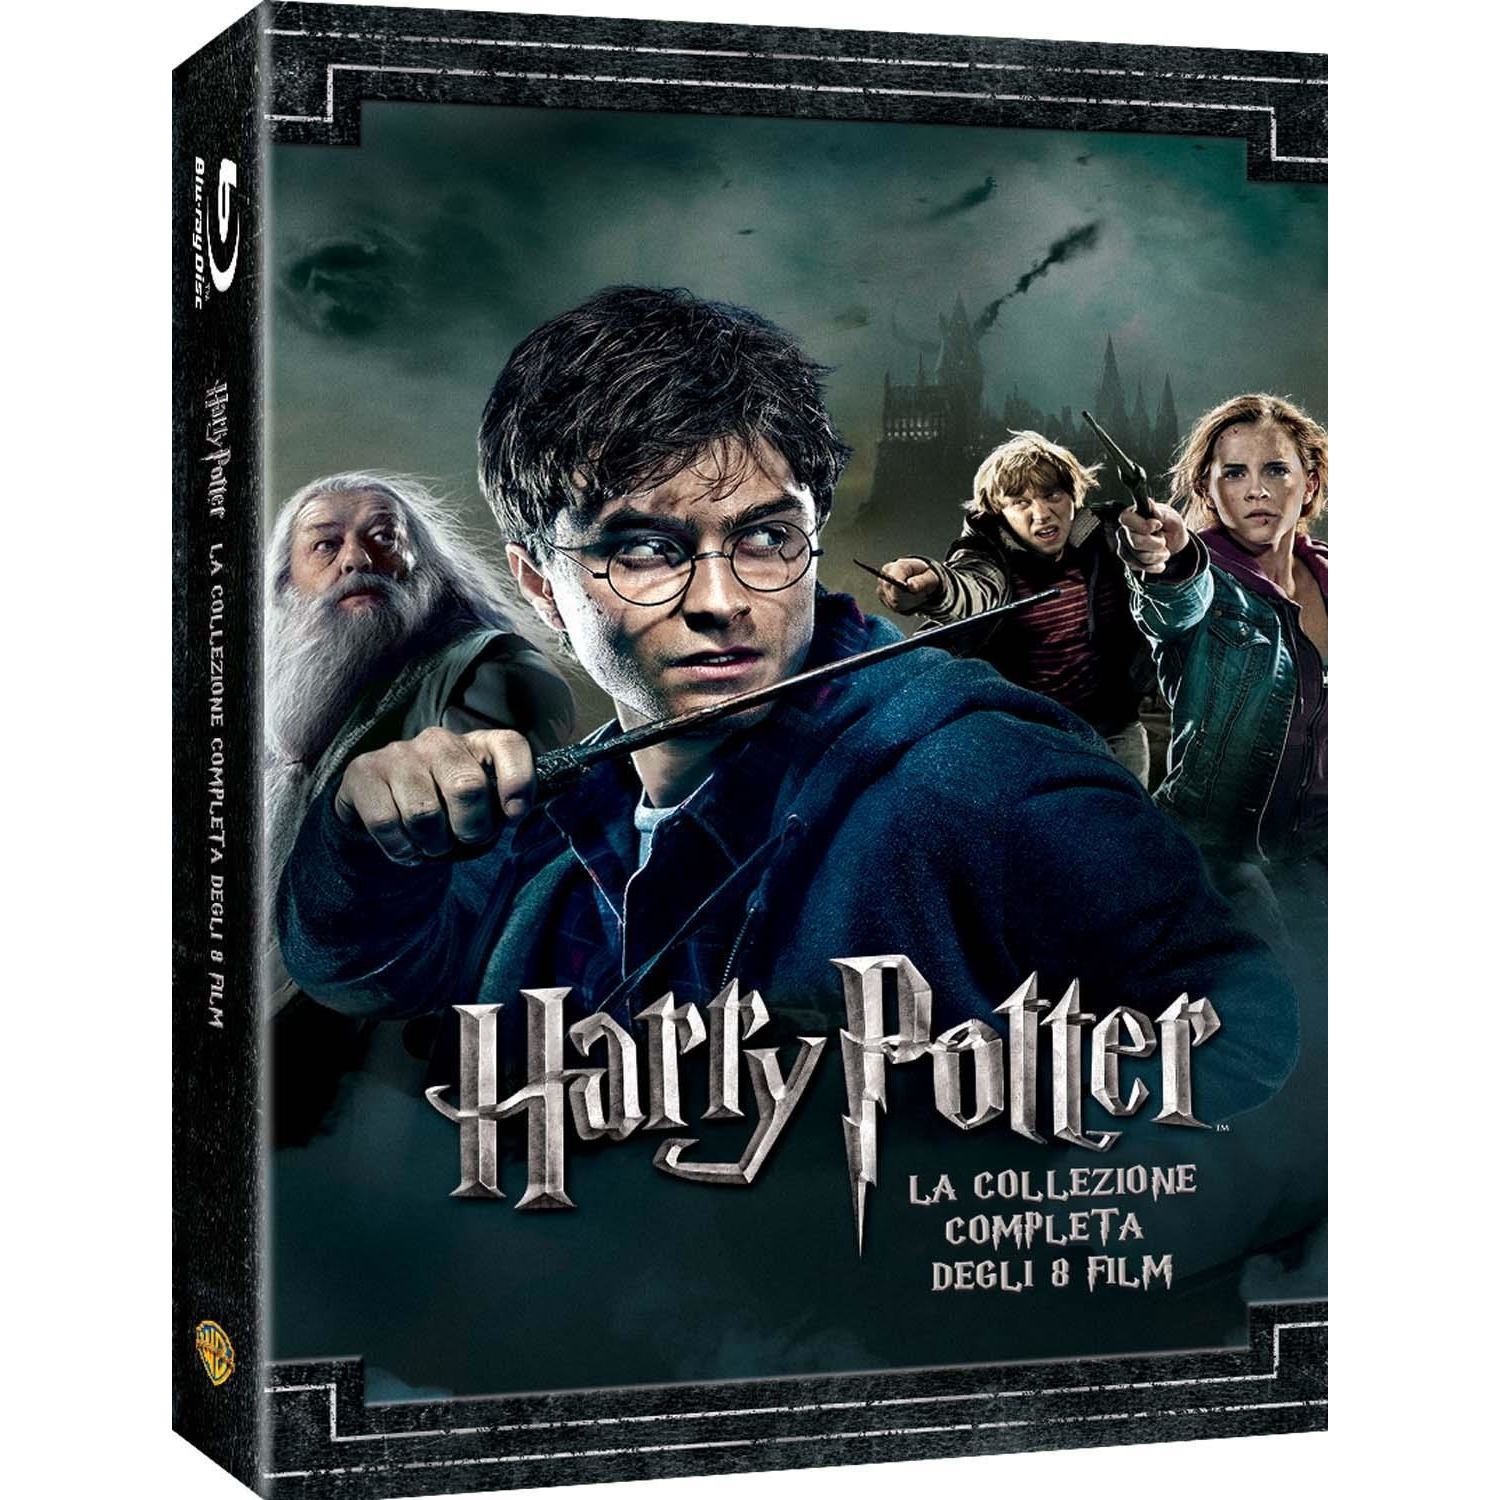 Immagine per Cofanetto Blu-ray Harry Potter 1-7  Collection    2018 da DIMOStore